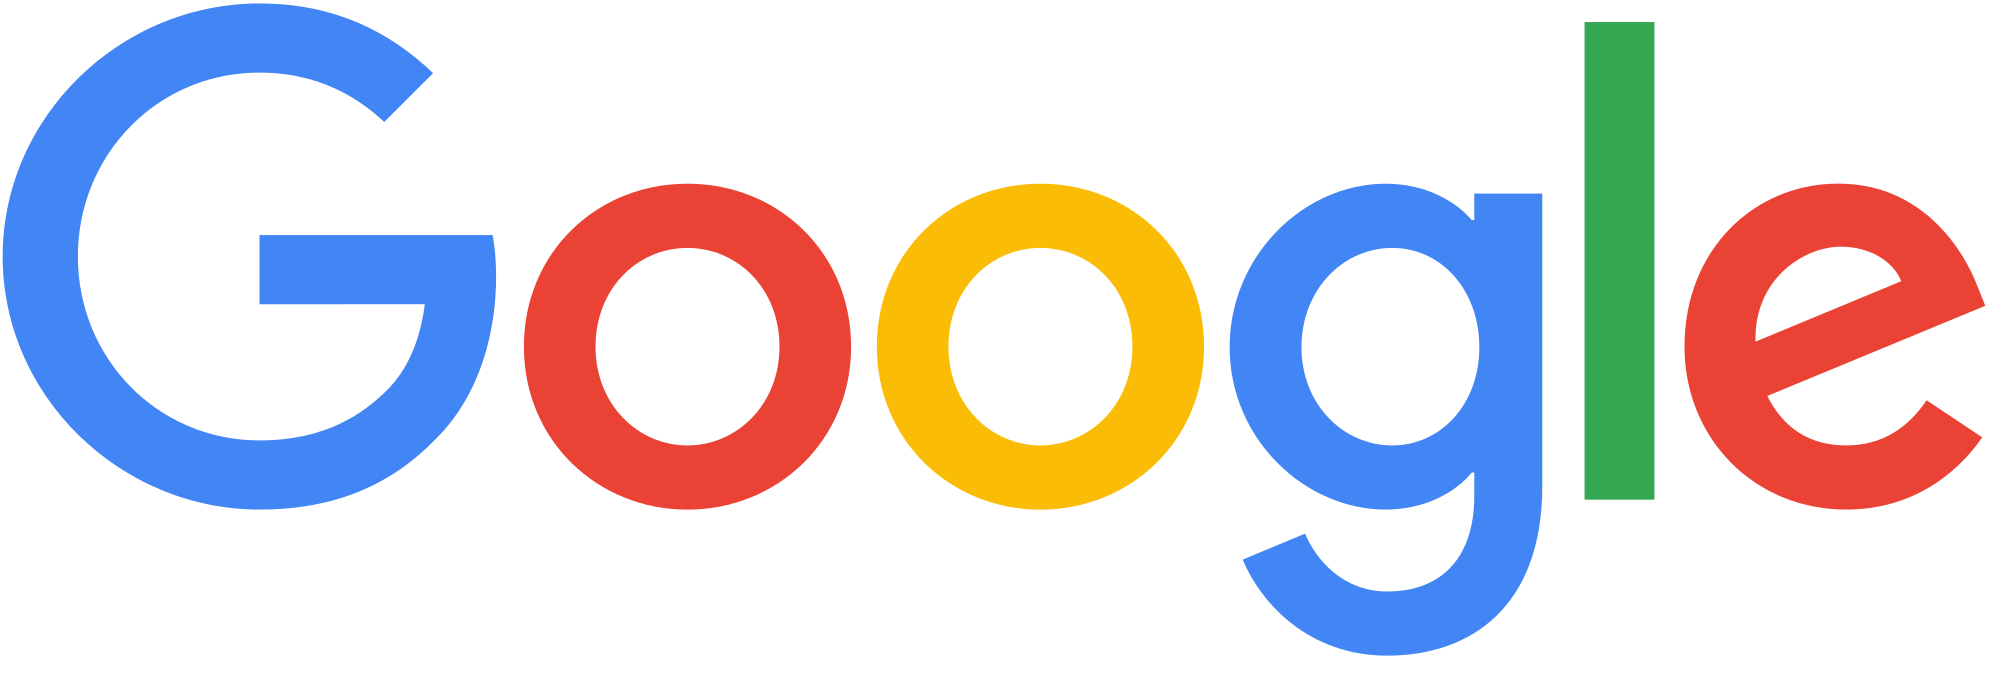 Google logo png transparent background large new